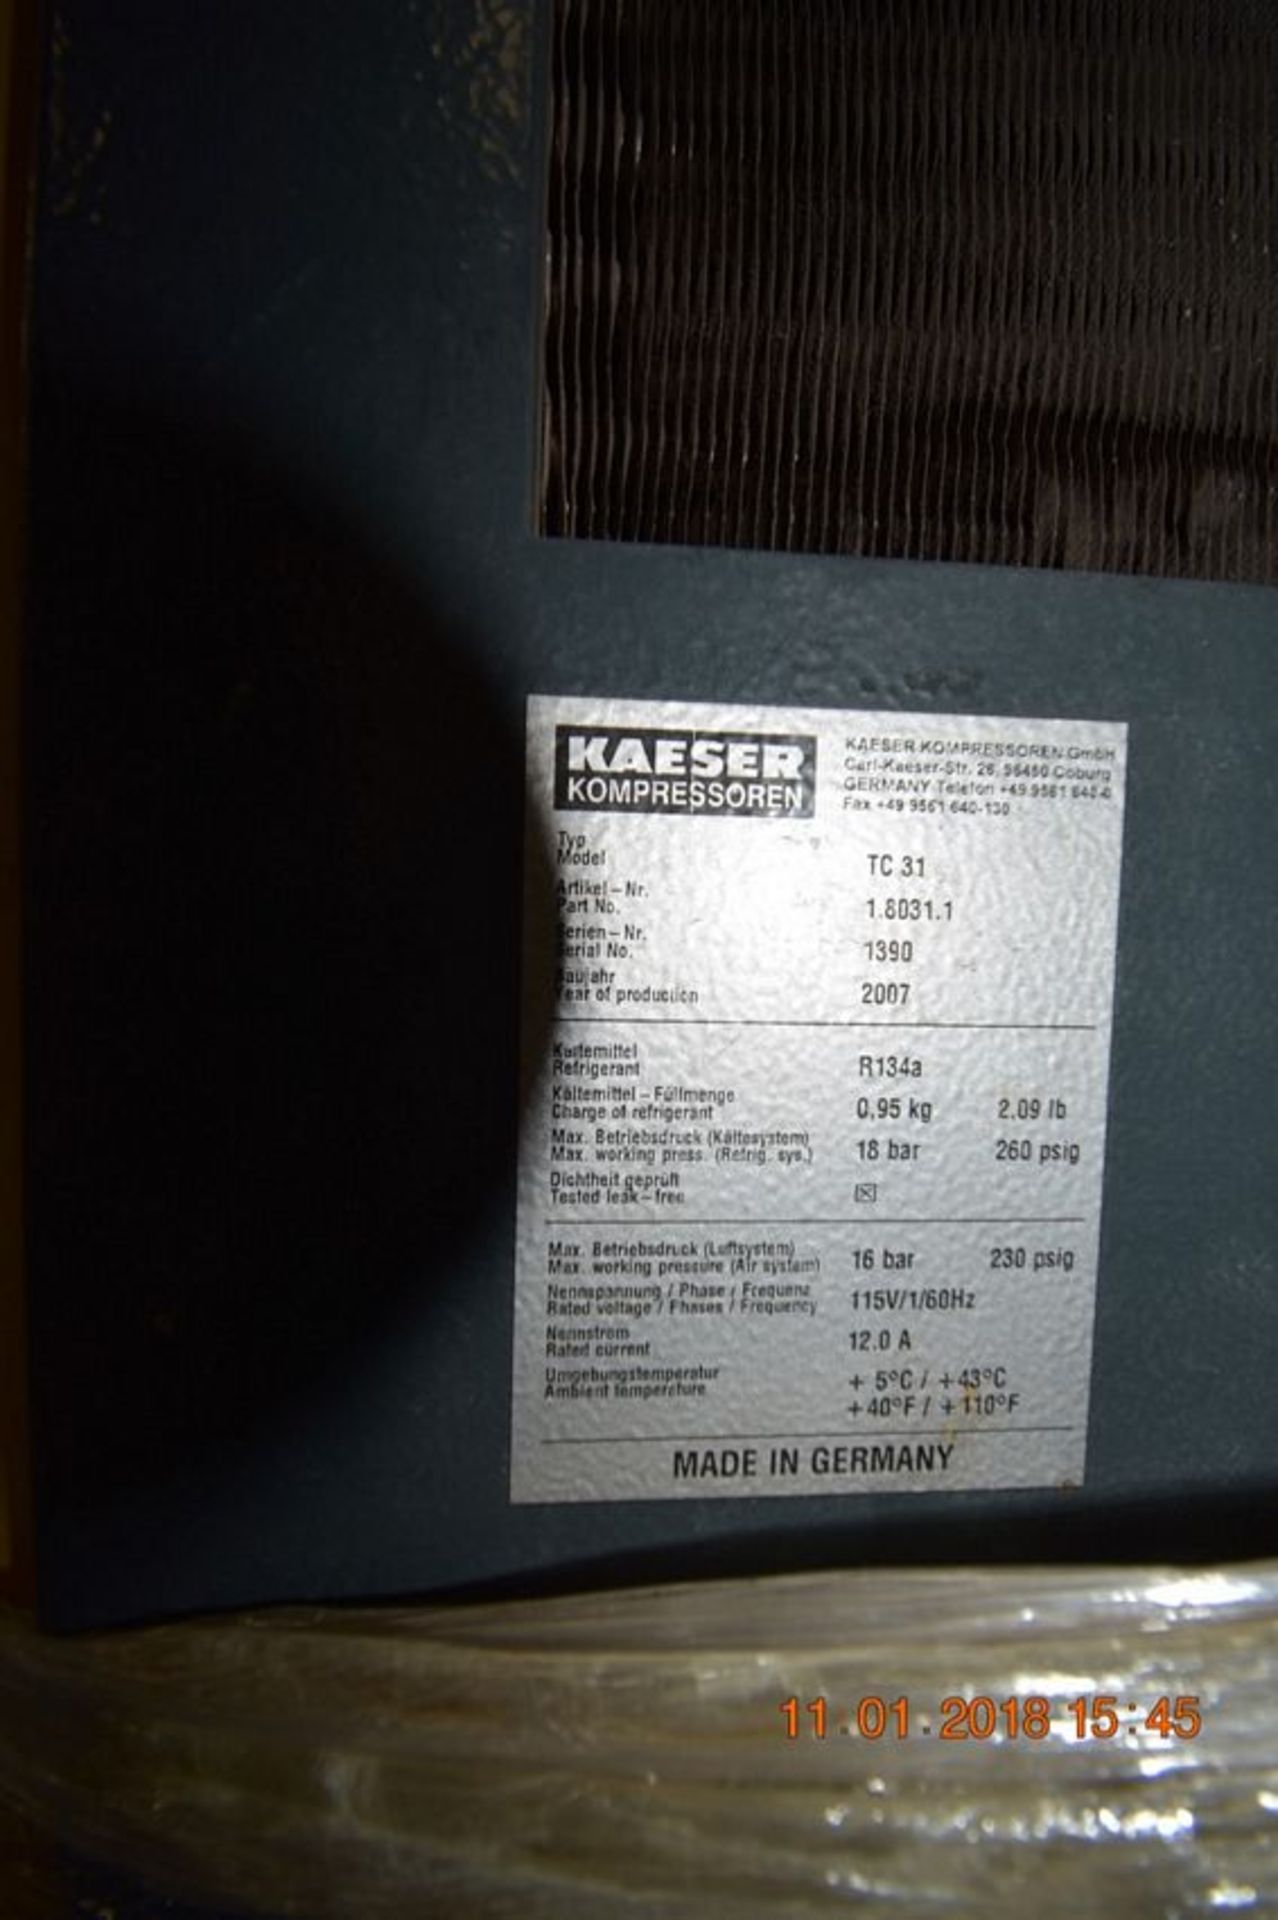 Kaeser Air Compressor | Kaeser Air Compressor Model TC31, S/N 1390. Built 2007, 115V/1/60Hz | MODEL# - Image 3 of 3